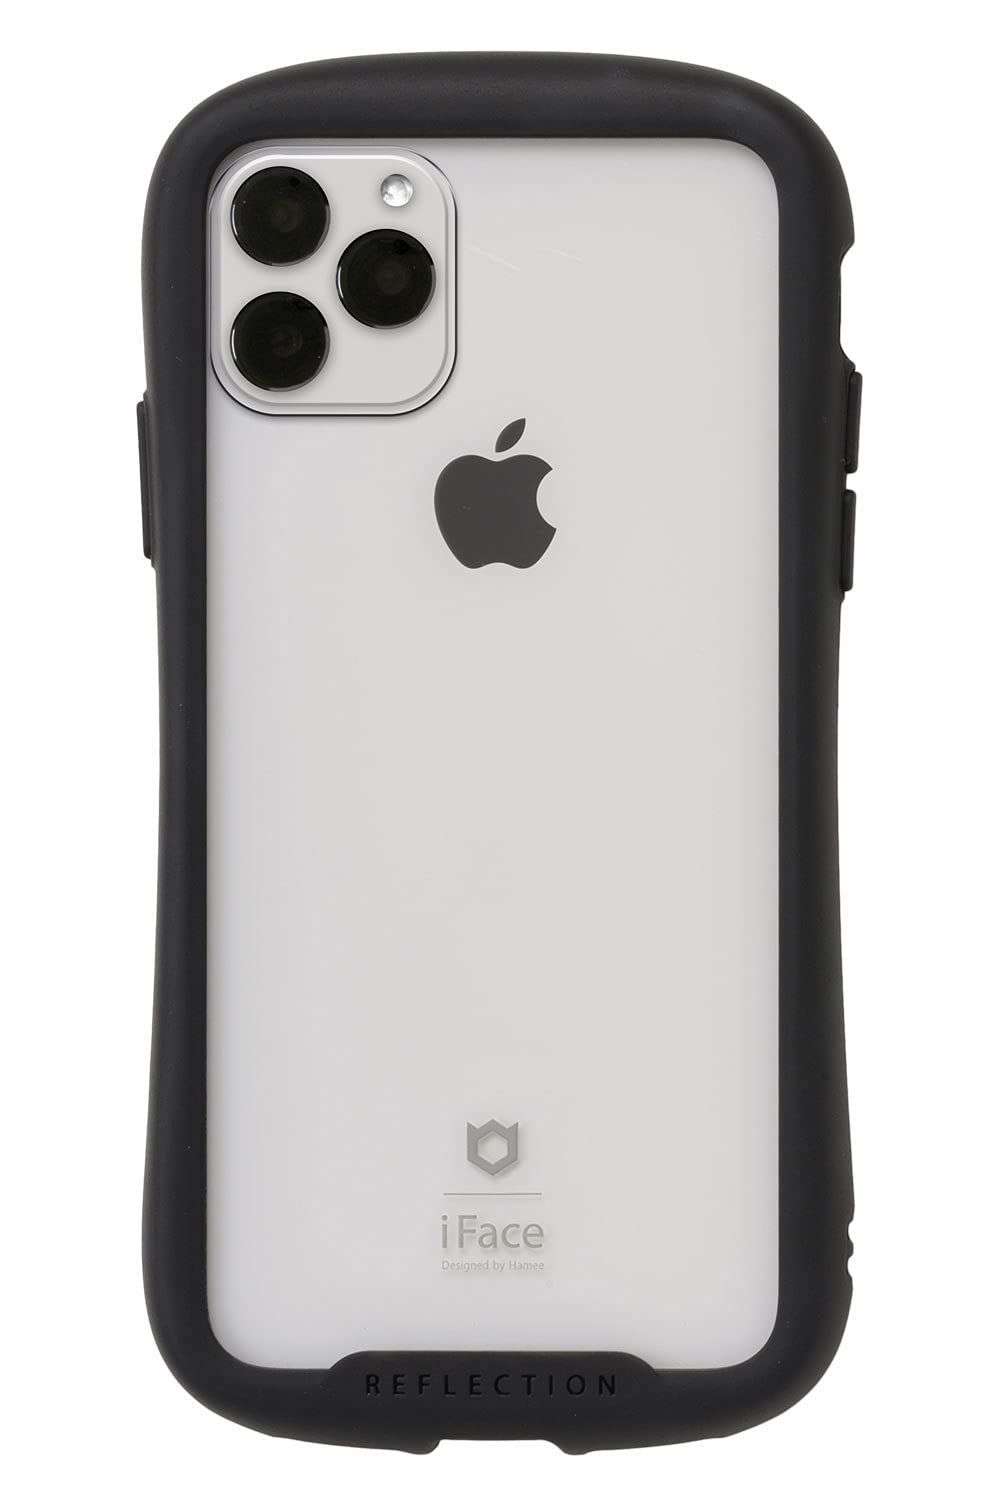 新着商品 Max ケース Pro クリア 11 iPhone 強化ガラス Reflection (ブラック) iFace 6349.26円  スマホアクセサリー